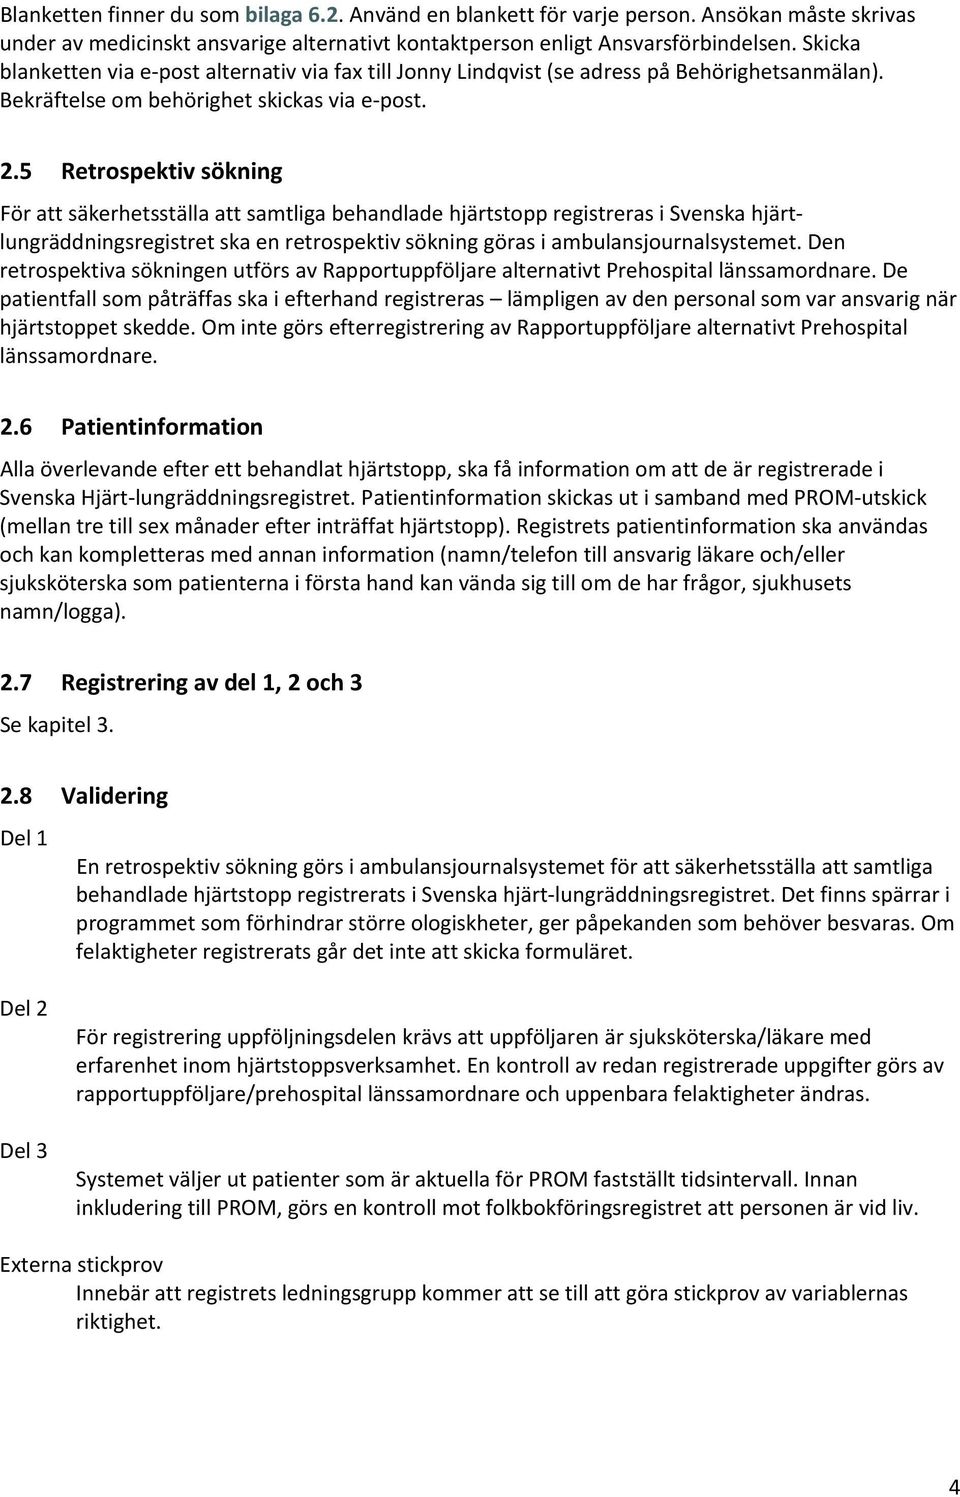 5 Retrospektiv sökning För att säkerhetsställa att samtliga behandlade hjärtstopp registreras i Svenska hjärtlungräddningsregistret ska en retrospektiv sökning göras i ambulansjournalsystemet.